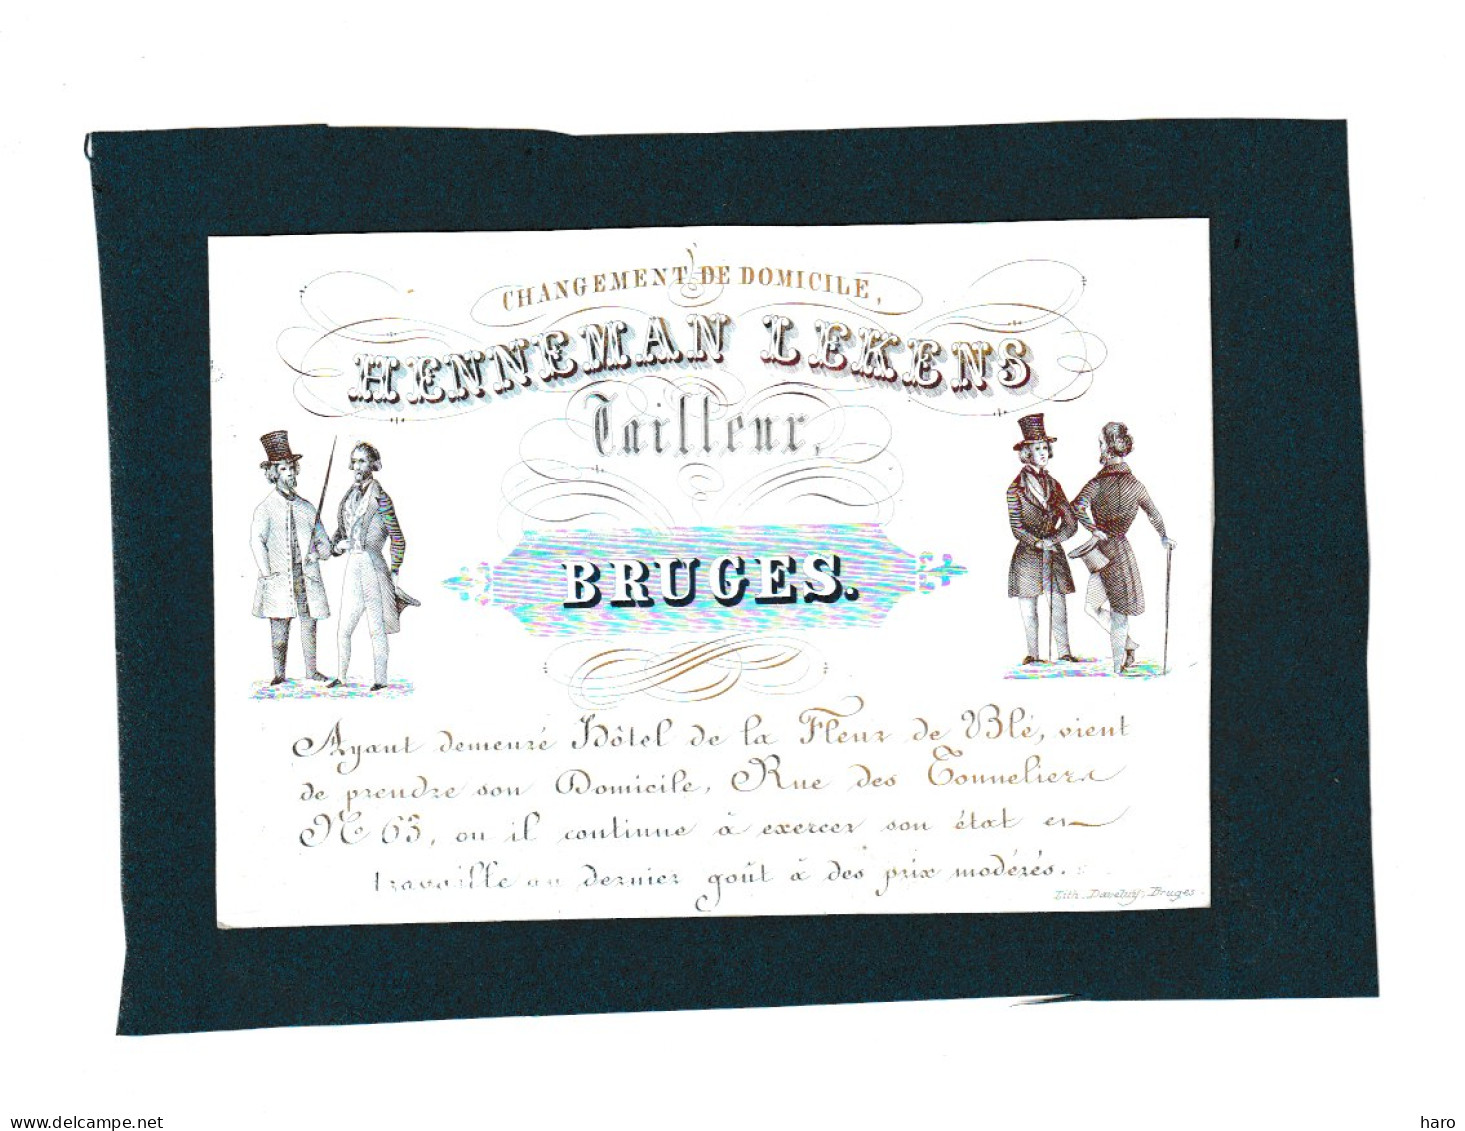 BRUGGE /BRUGES  - Carte De Visite Porcelaine - Tailleur HENNEMAN LEKENS   +/- 1840...50 - (Mi 13) - Visiting Cards